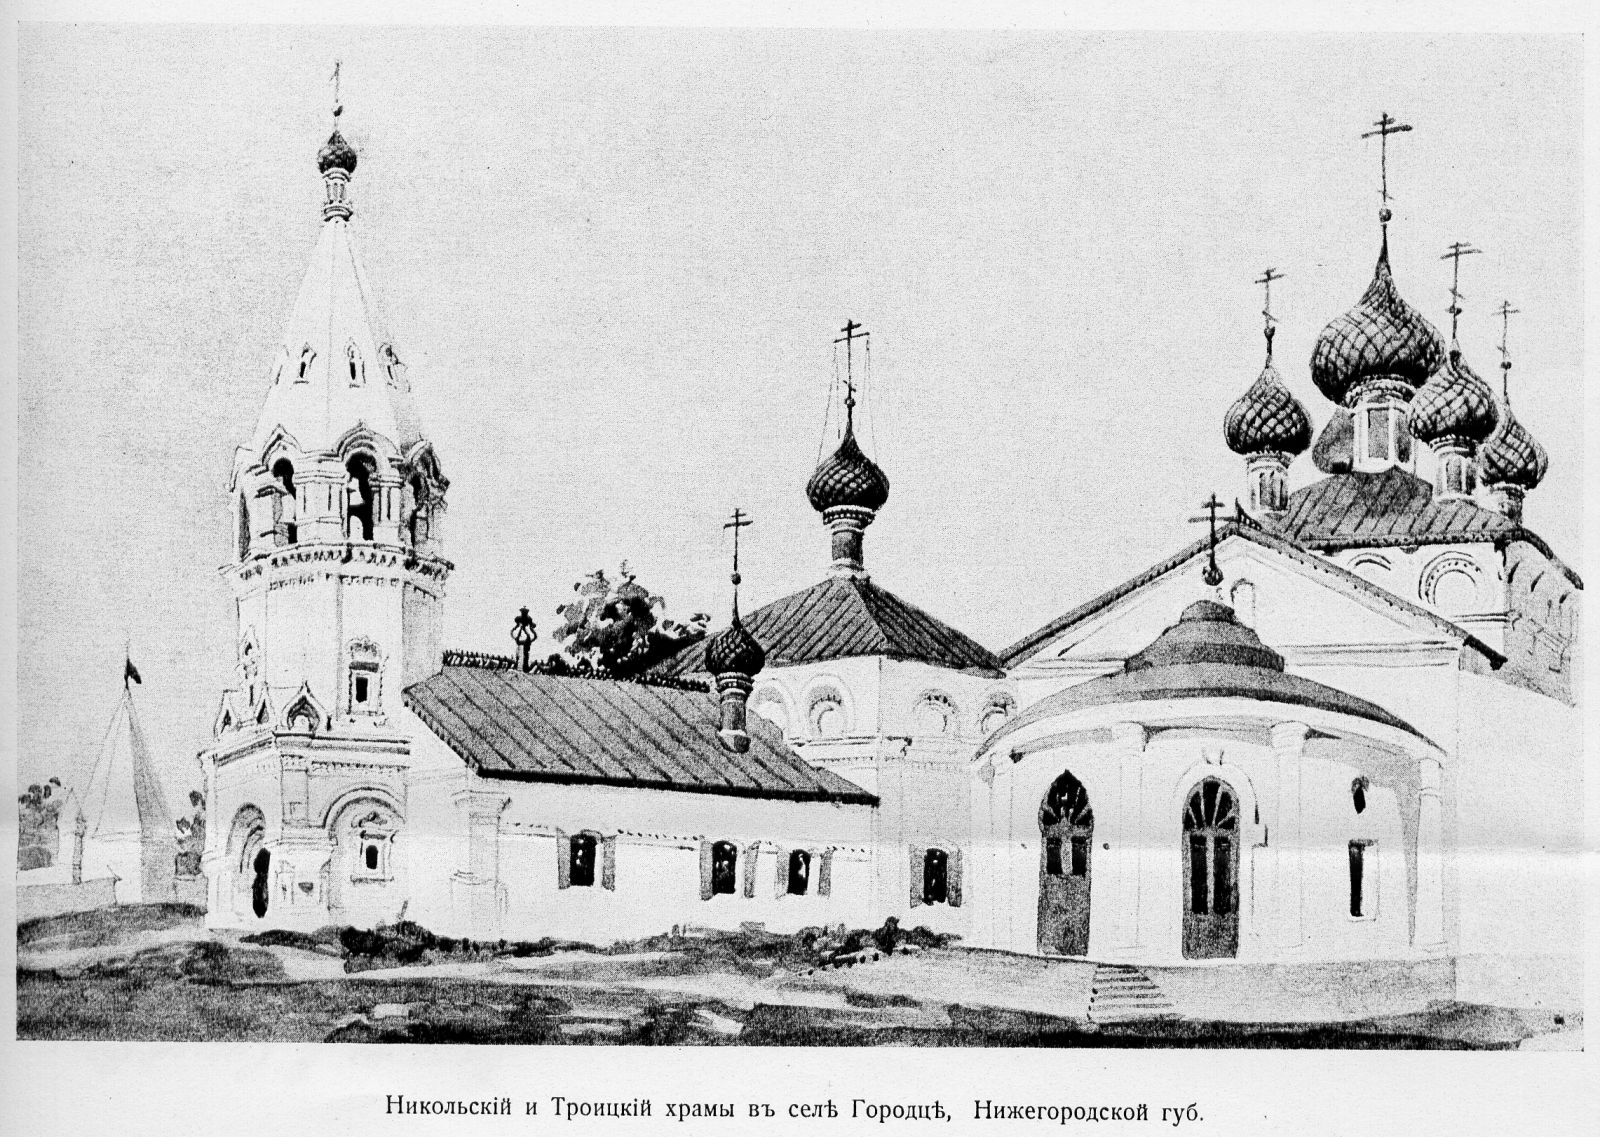 Соборный комплекс села Городца. Рис. Л.В. Даля, 1869 г.